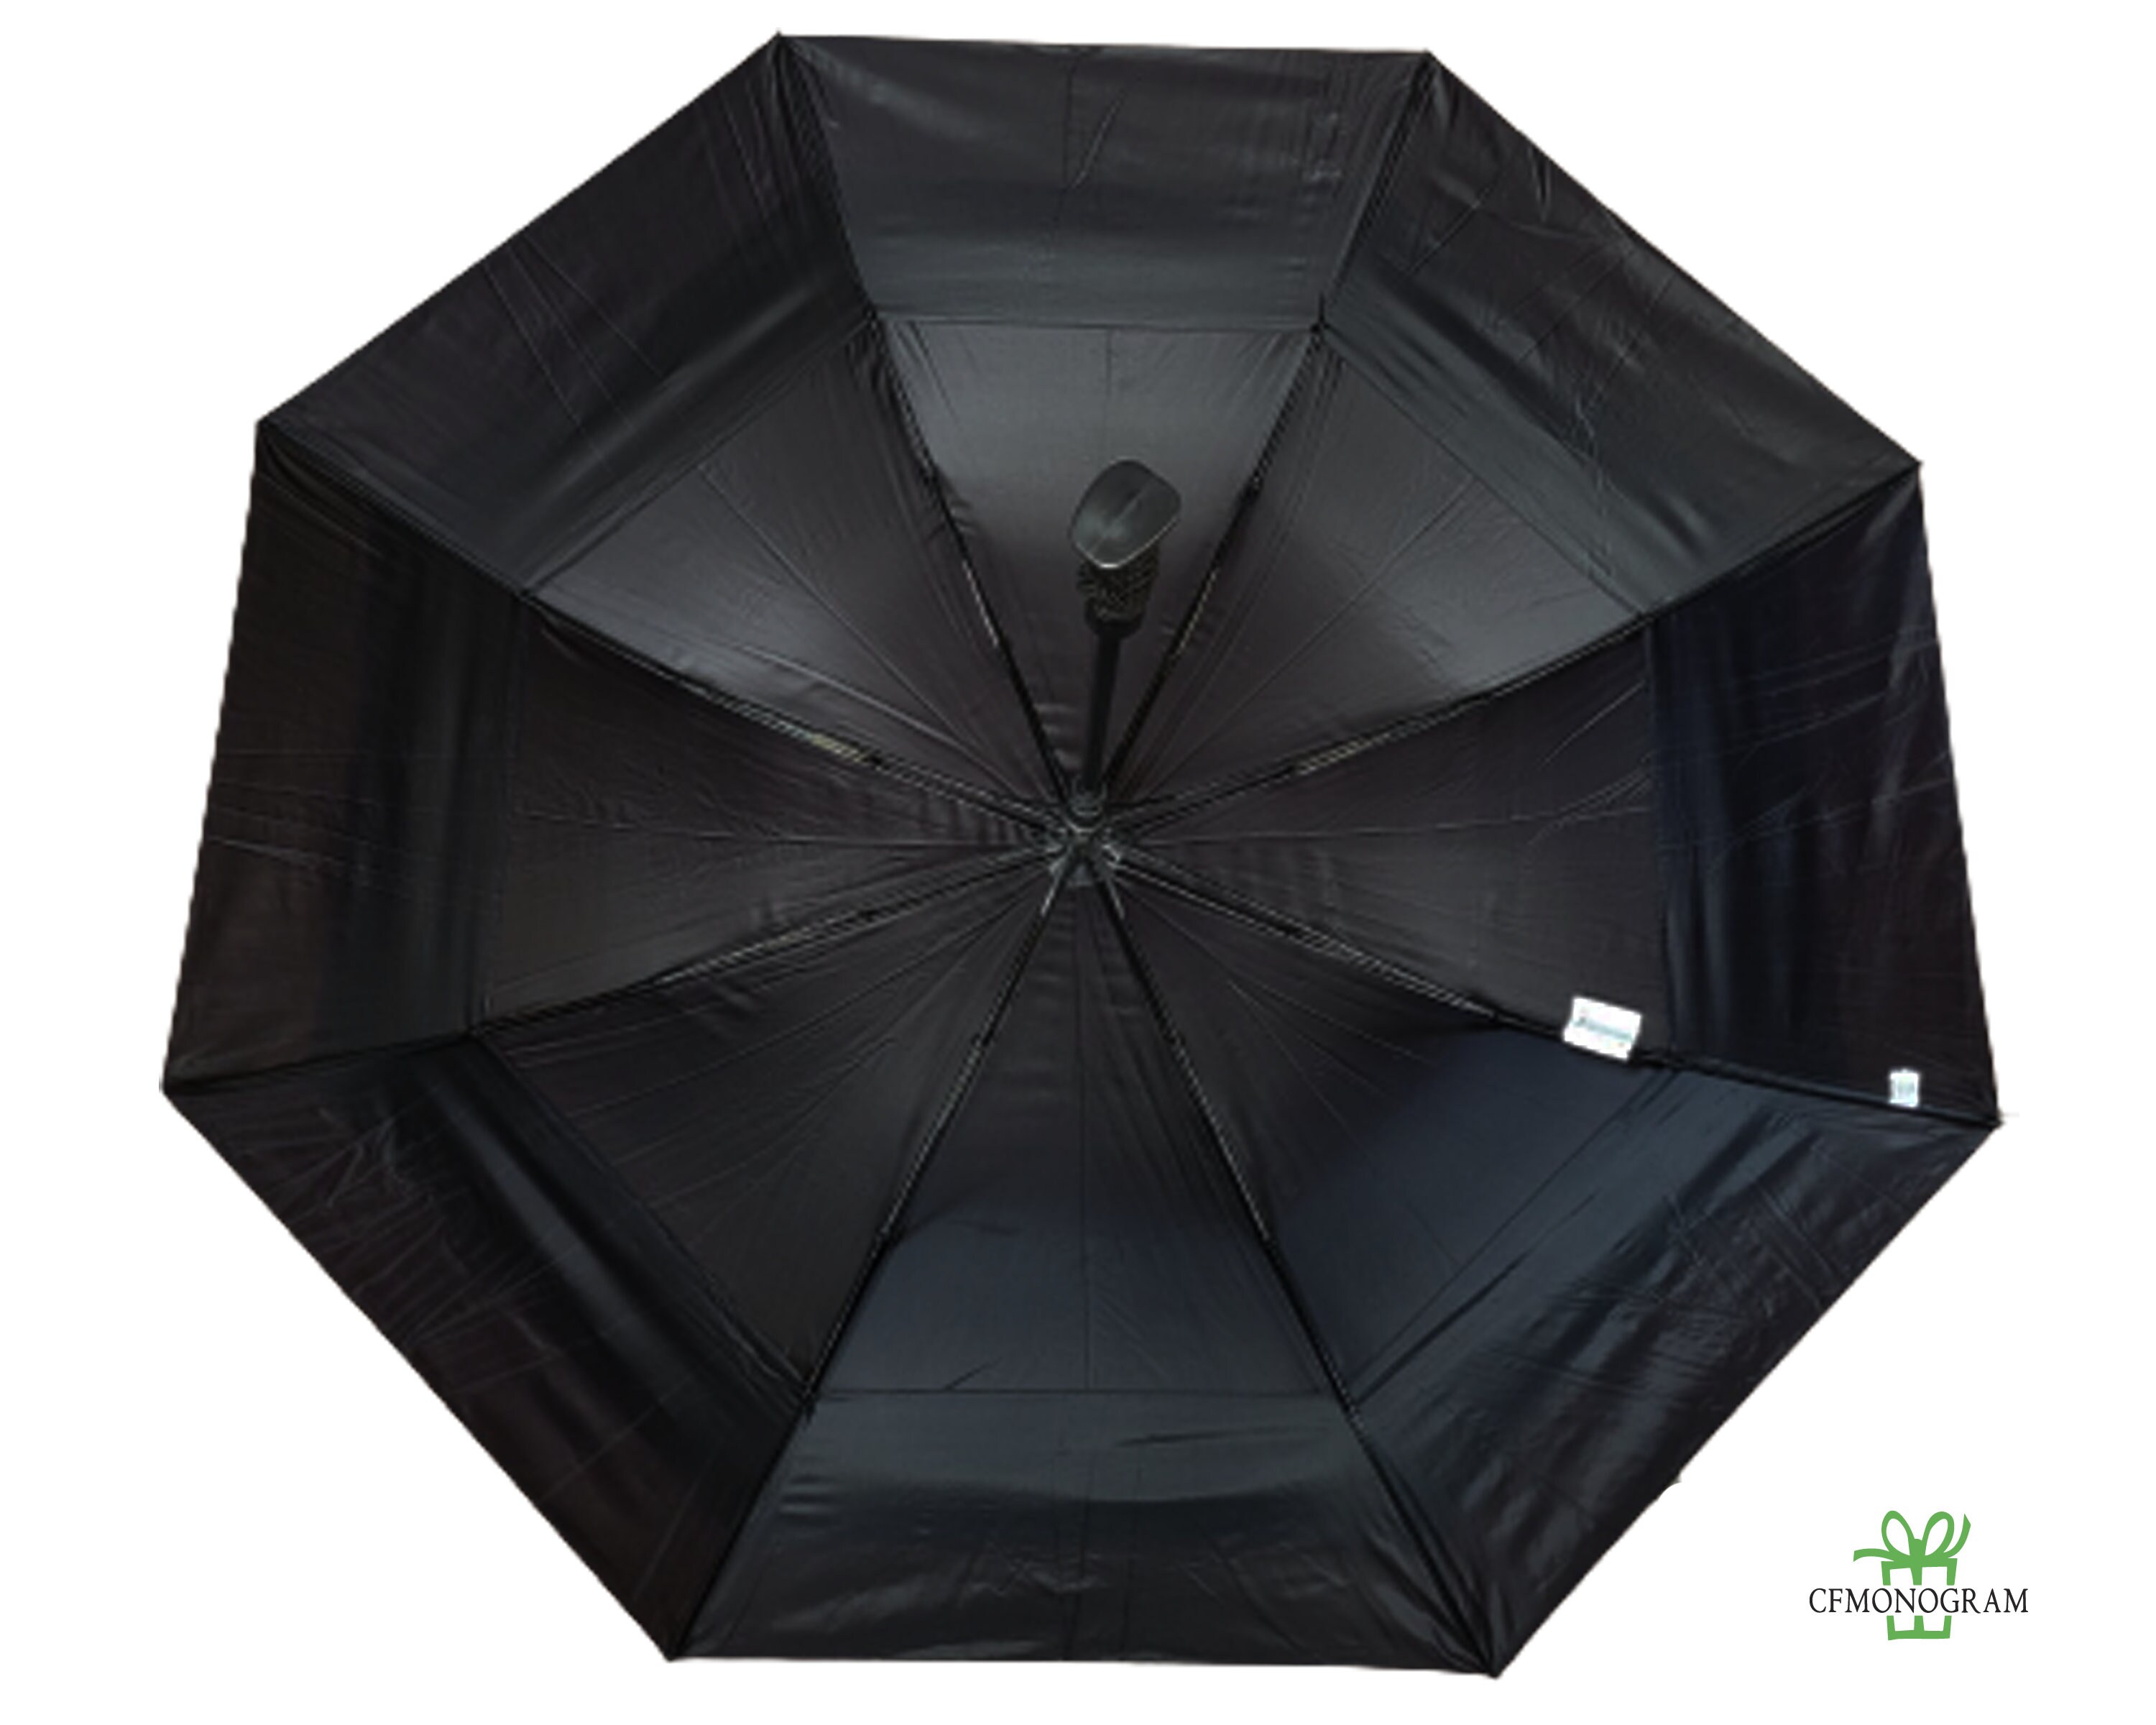 Personalised Golf umbrella Accessories Umbrellas & Rain Accessories 